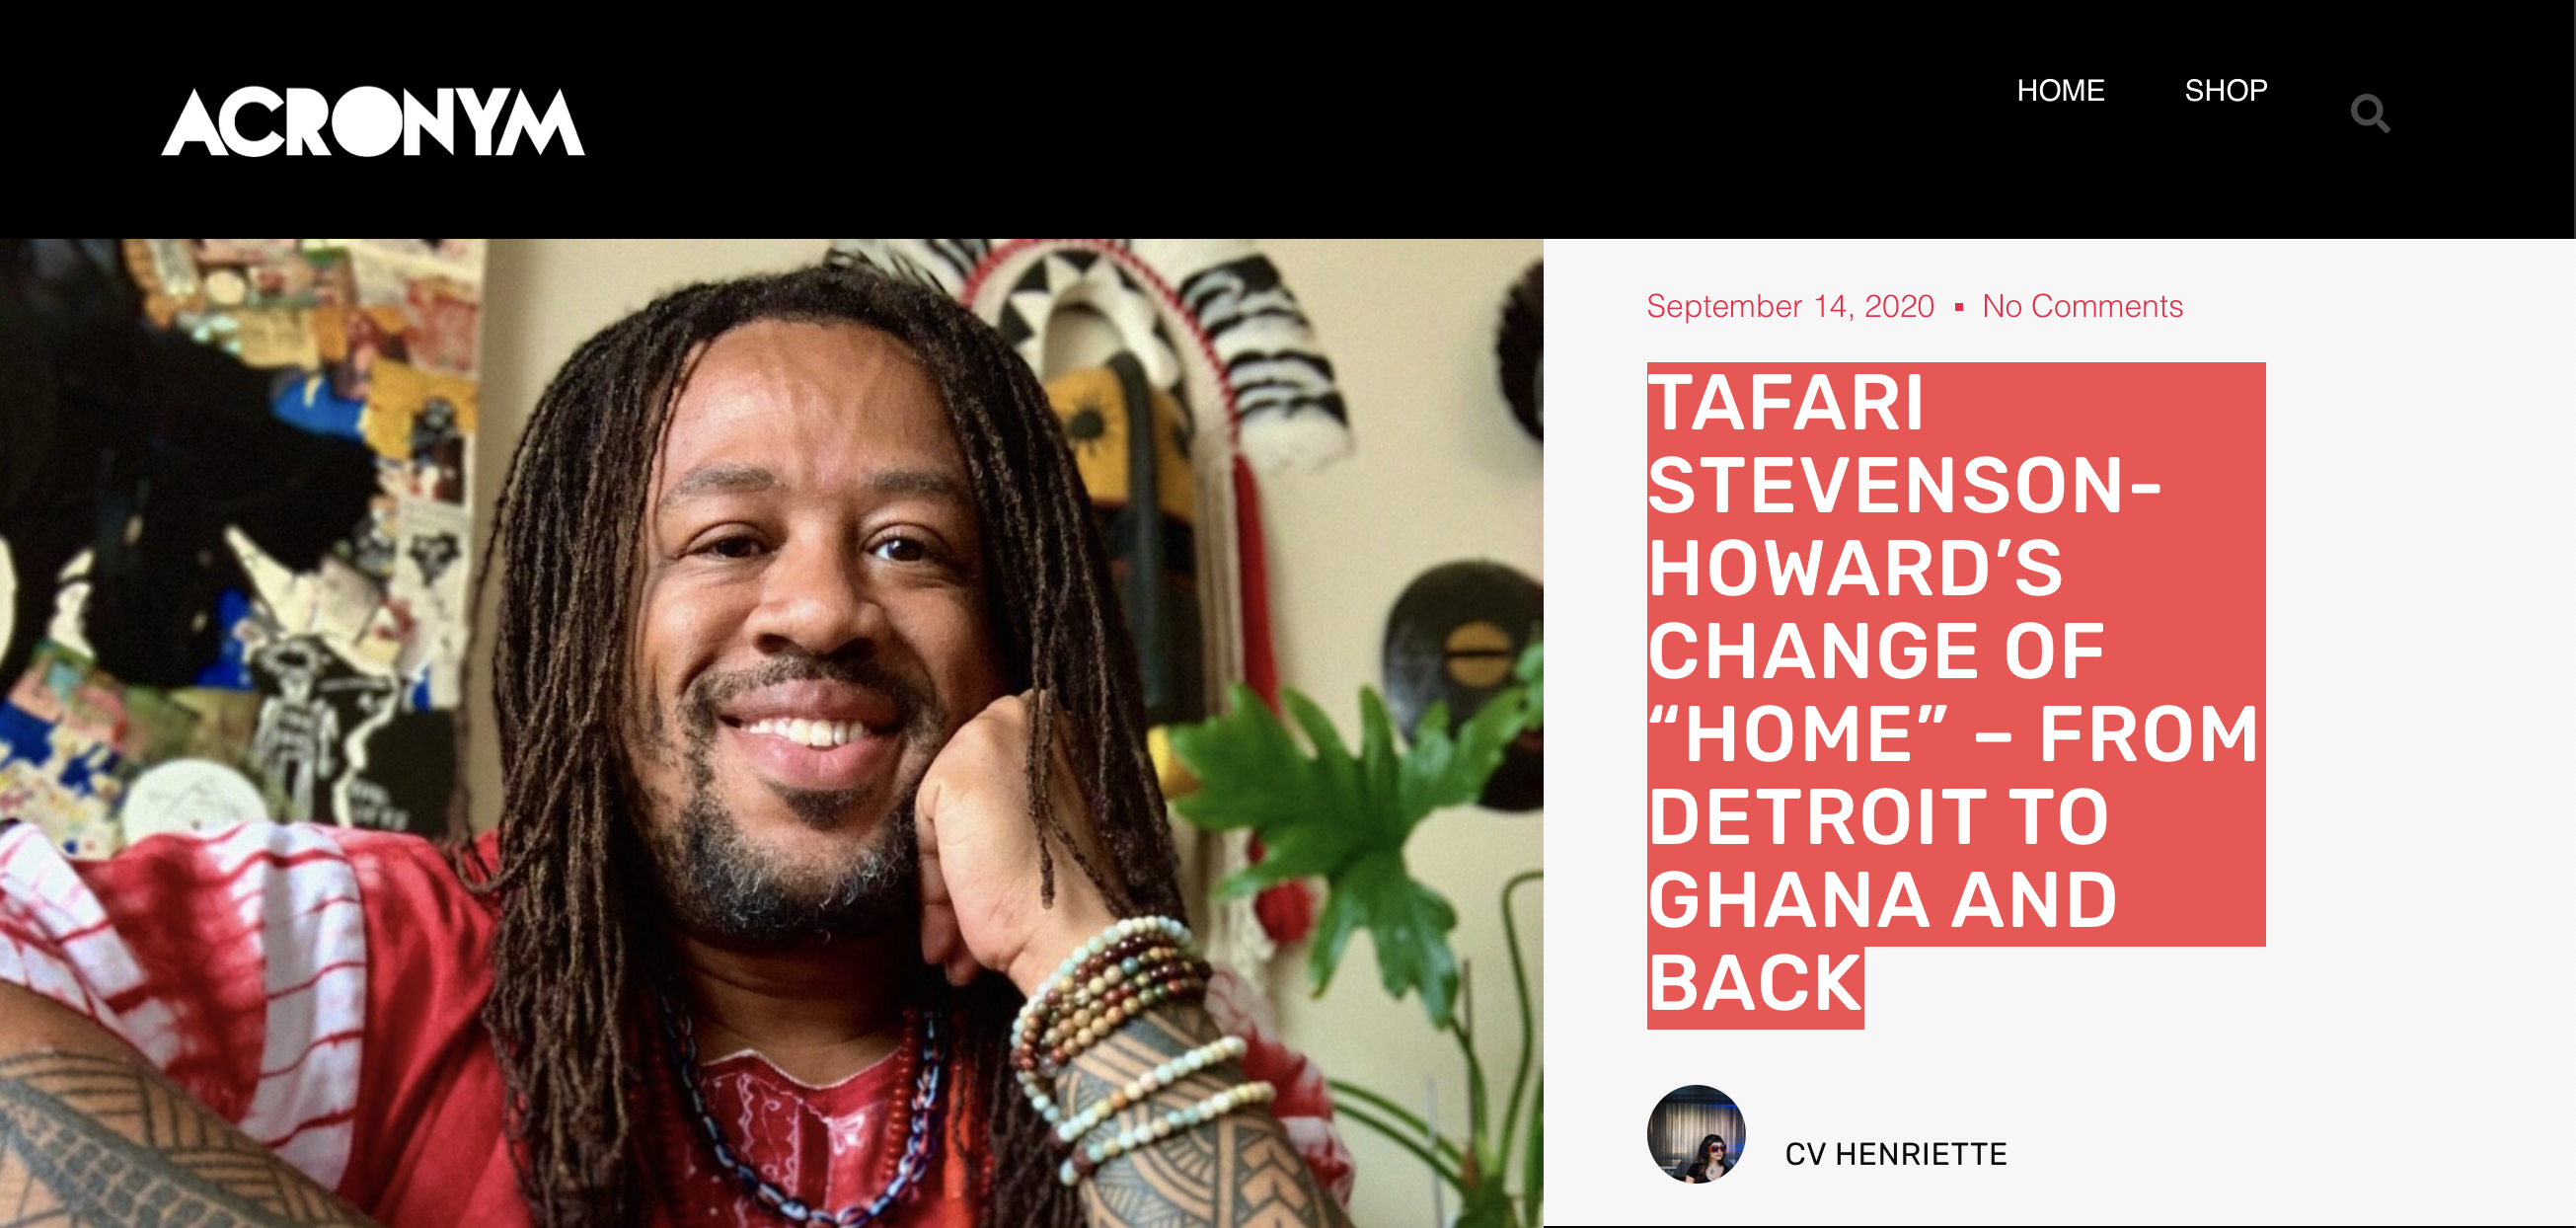 Art of the Zodiac: ‘Tafari Stevenson-Howard’s Change Of “Home” – From Detroit To Ghana And Back’